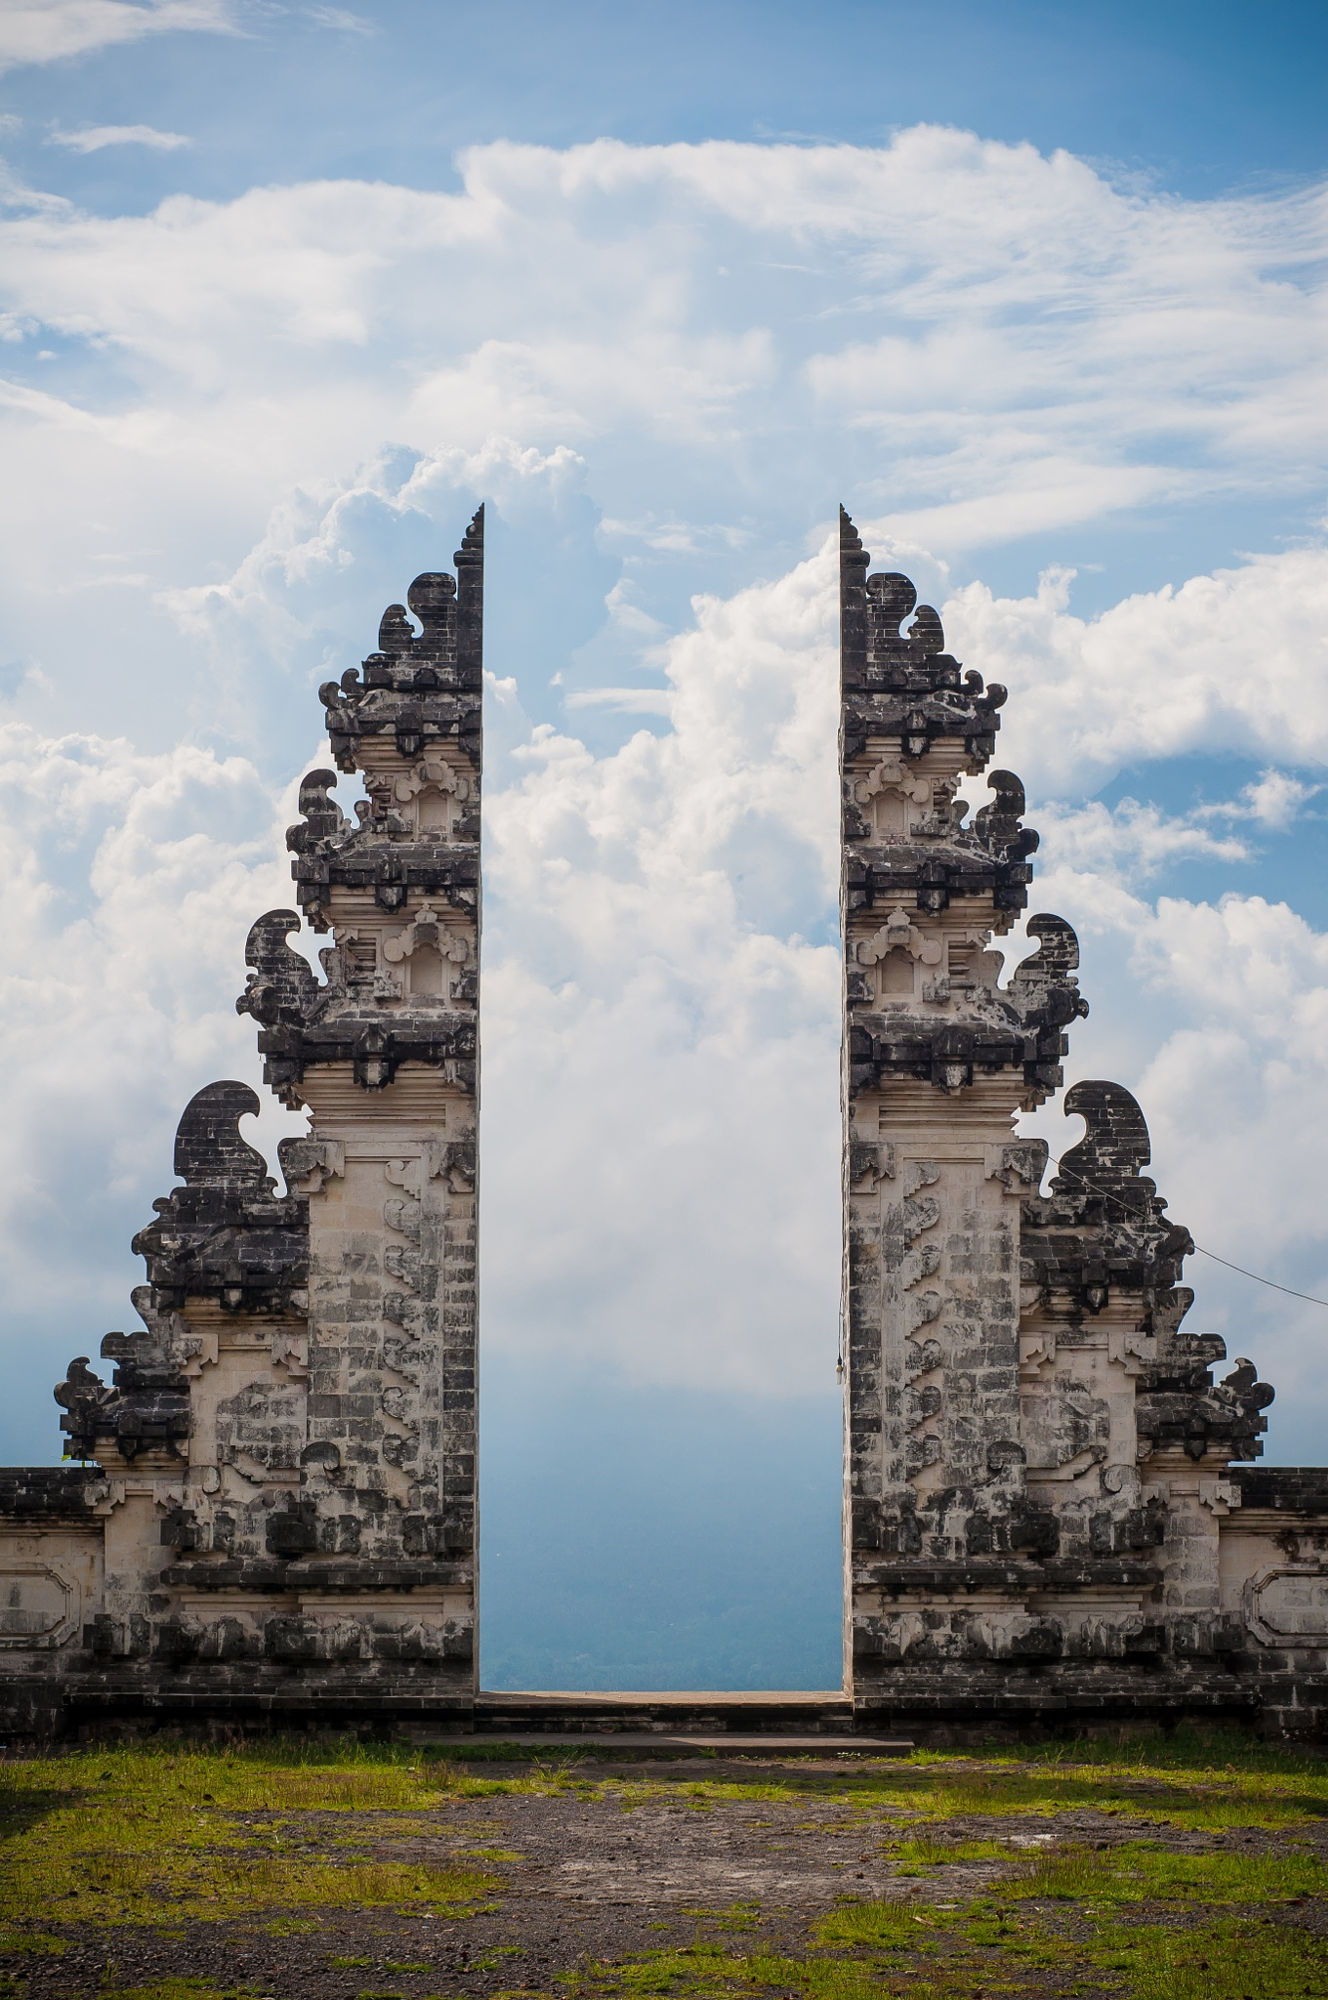 Du lịch Indonesia qua 15 bức ảnh thắng cảnh tuyệt đẹp  Địa điểm du lịch